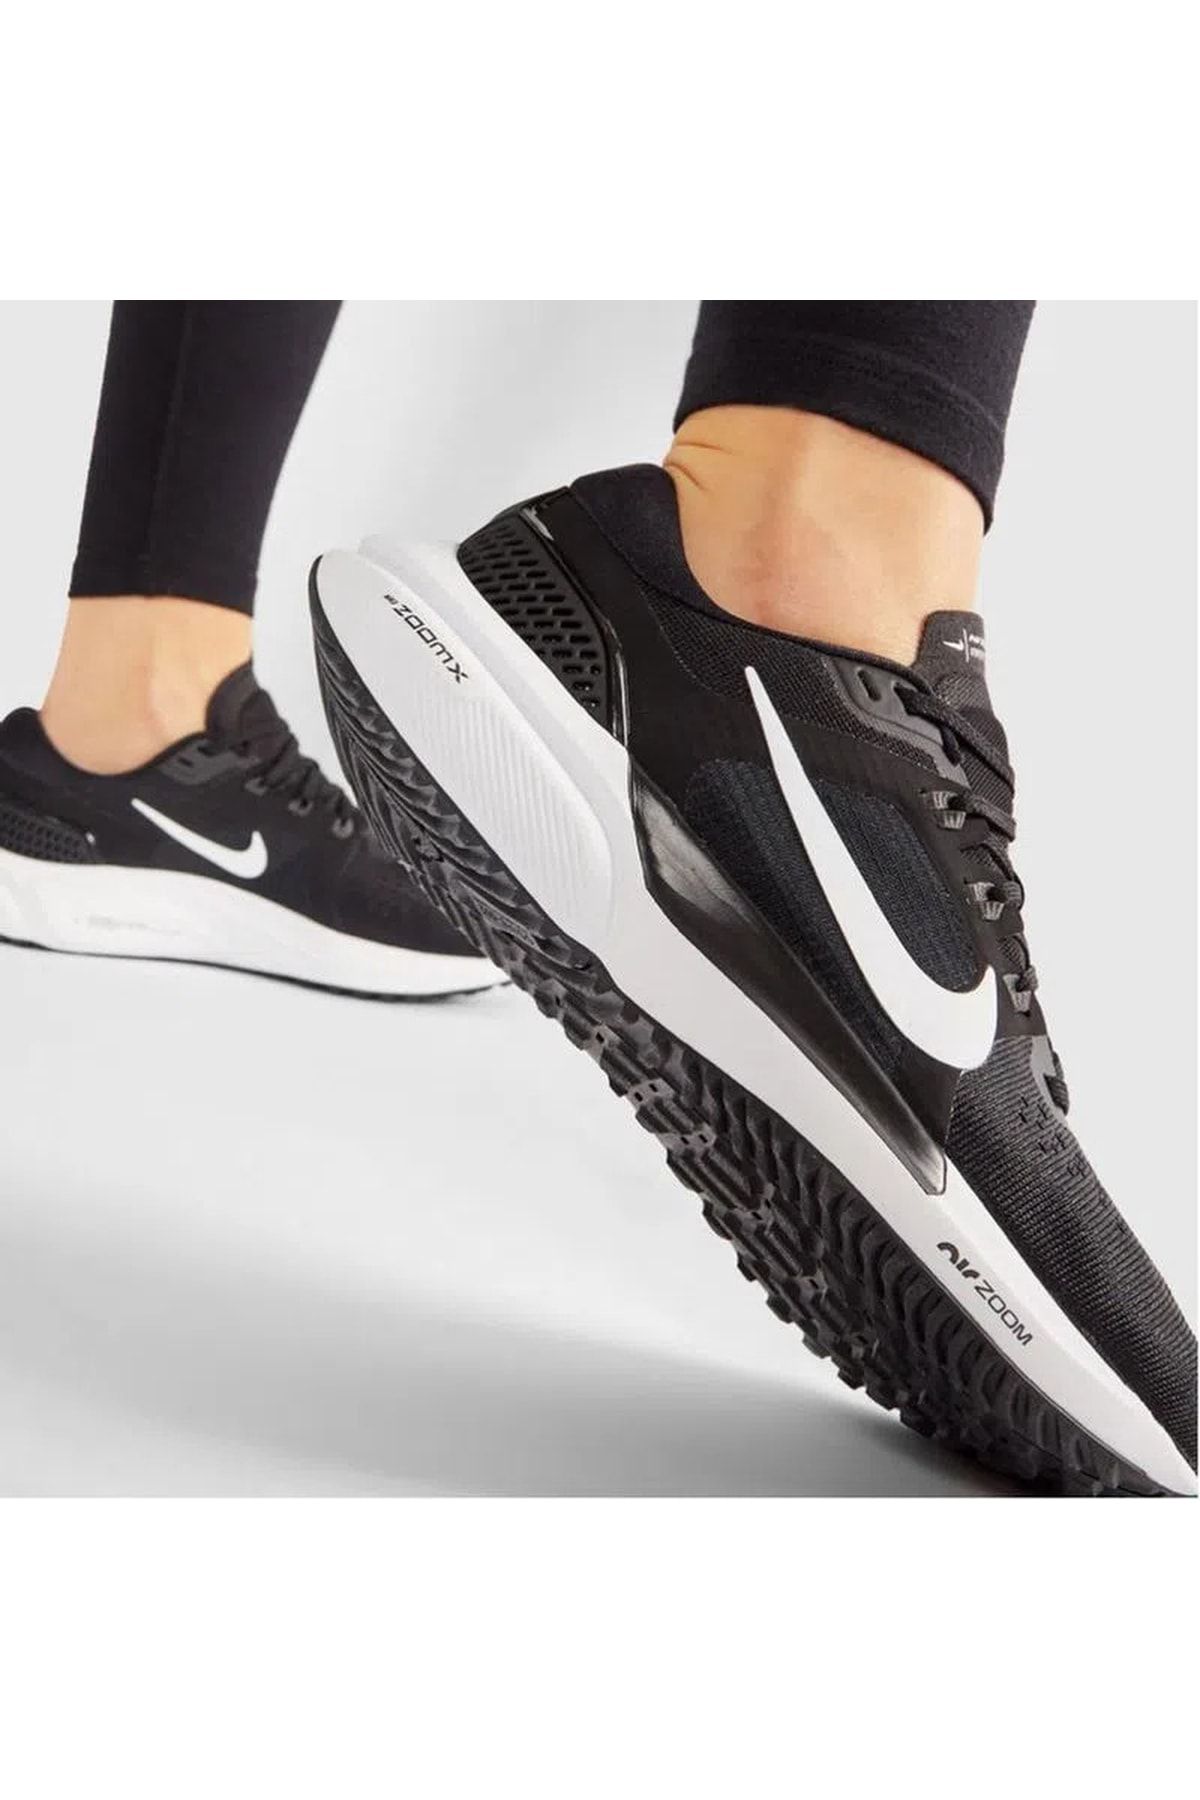 Nike Wmns Air Zoom Vomero 16 Kadın Siyah Koşu Ayakkabısı Da7698-001